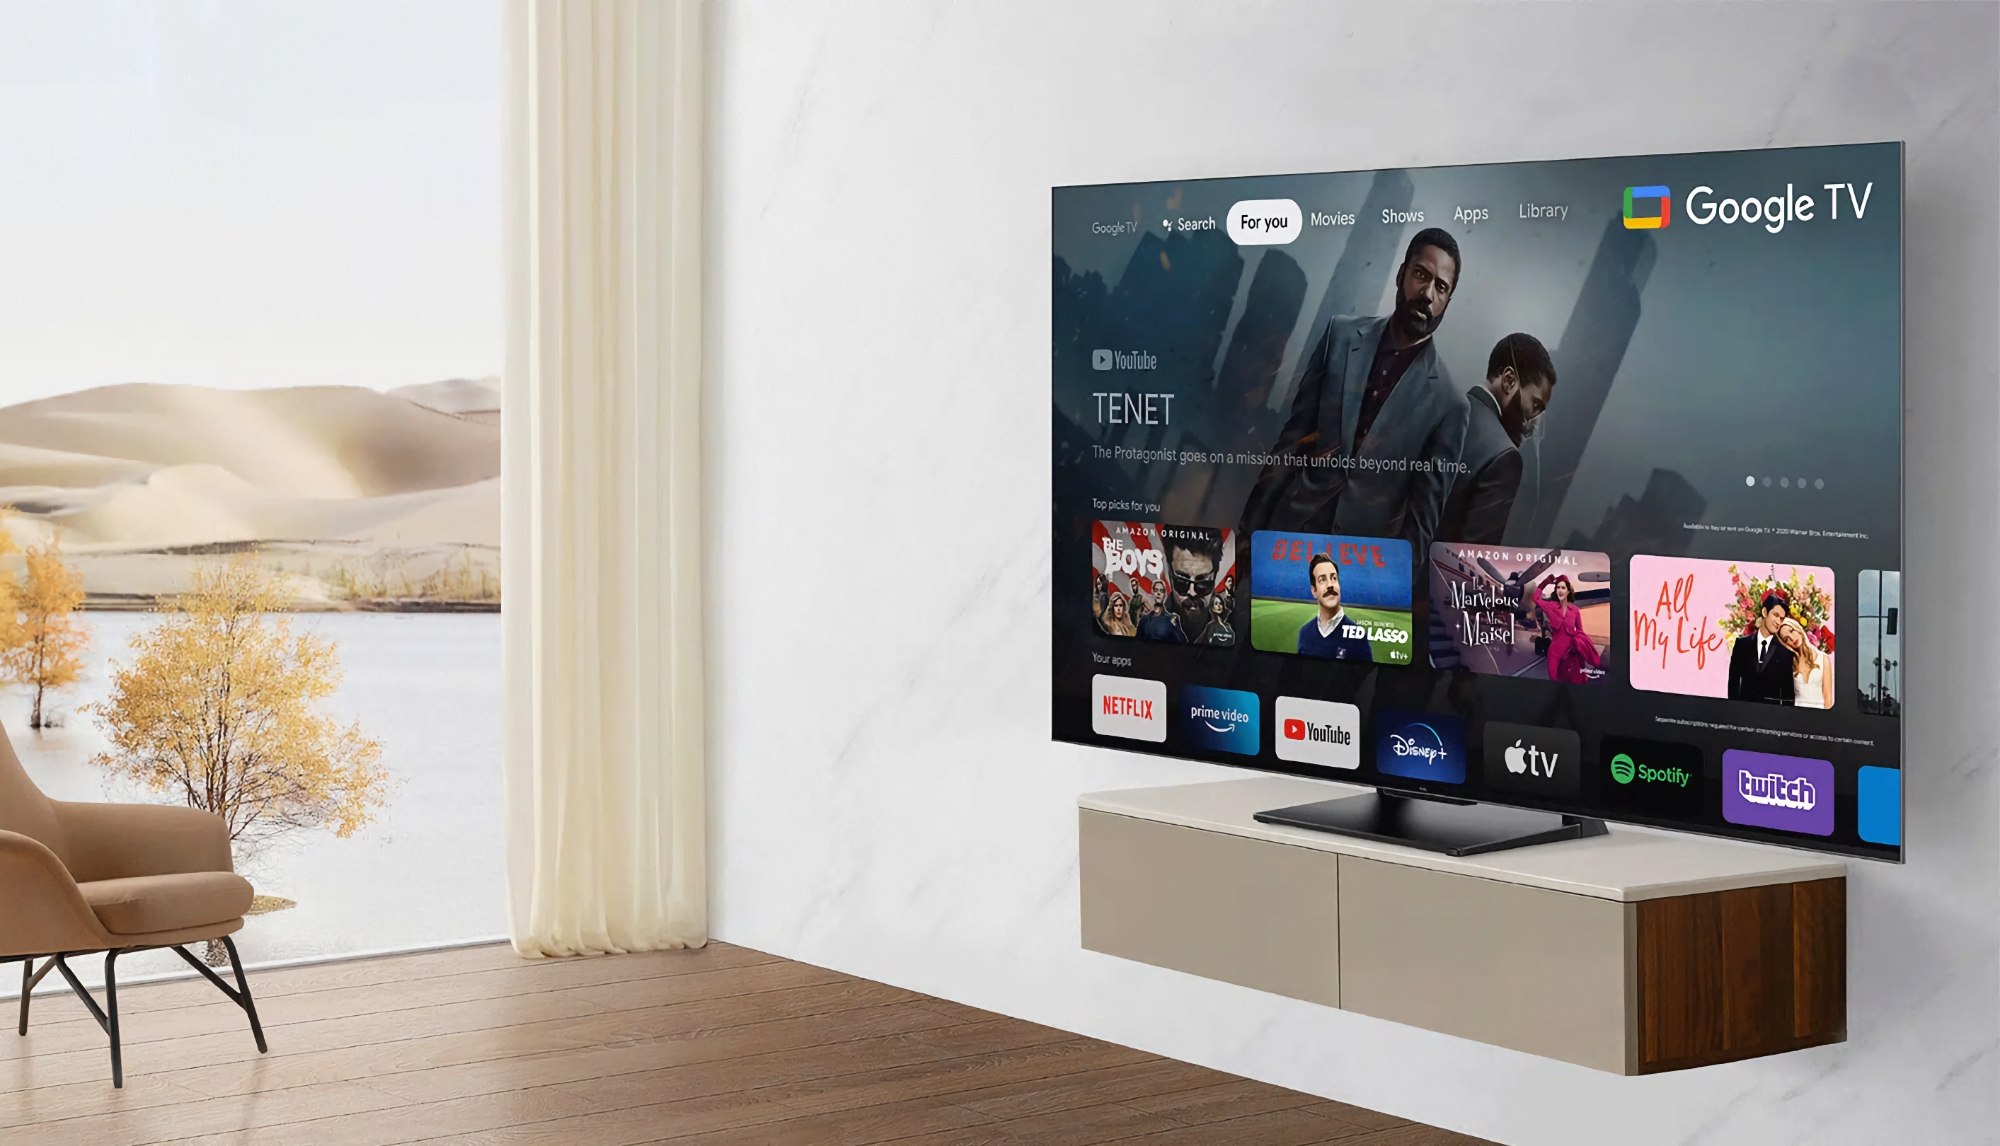 TCL C74 QLED TV: una gamma di smart TV con schermi QLED fino a 75 pollici e Google TV a bordo, con un prezzo a partire da 799 euro.